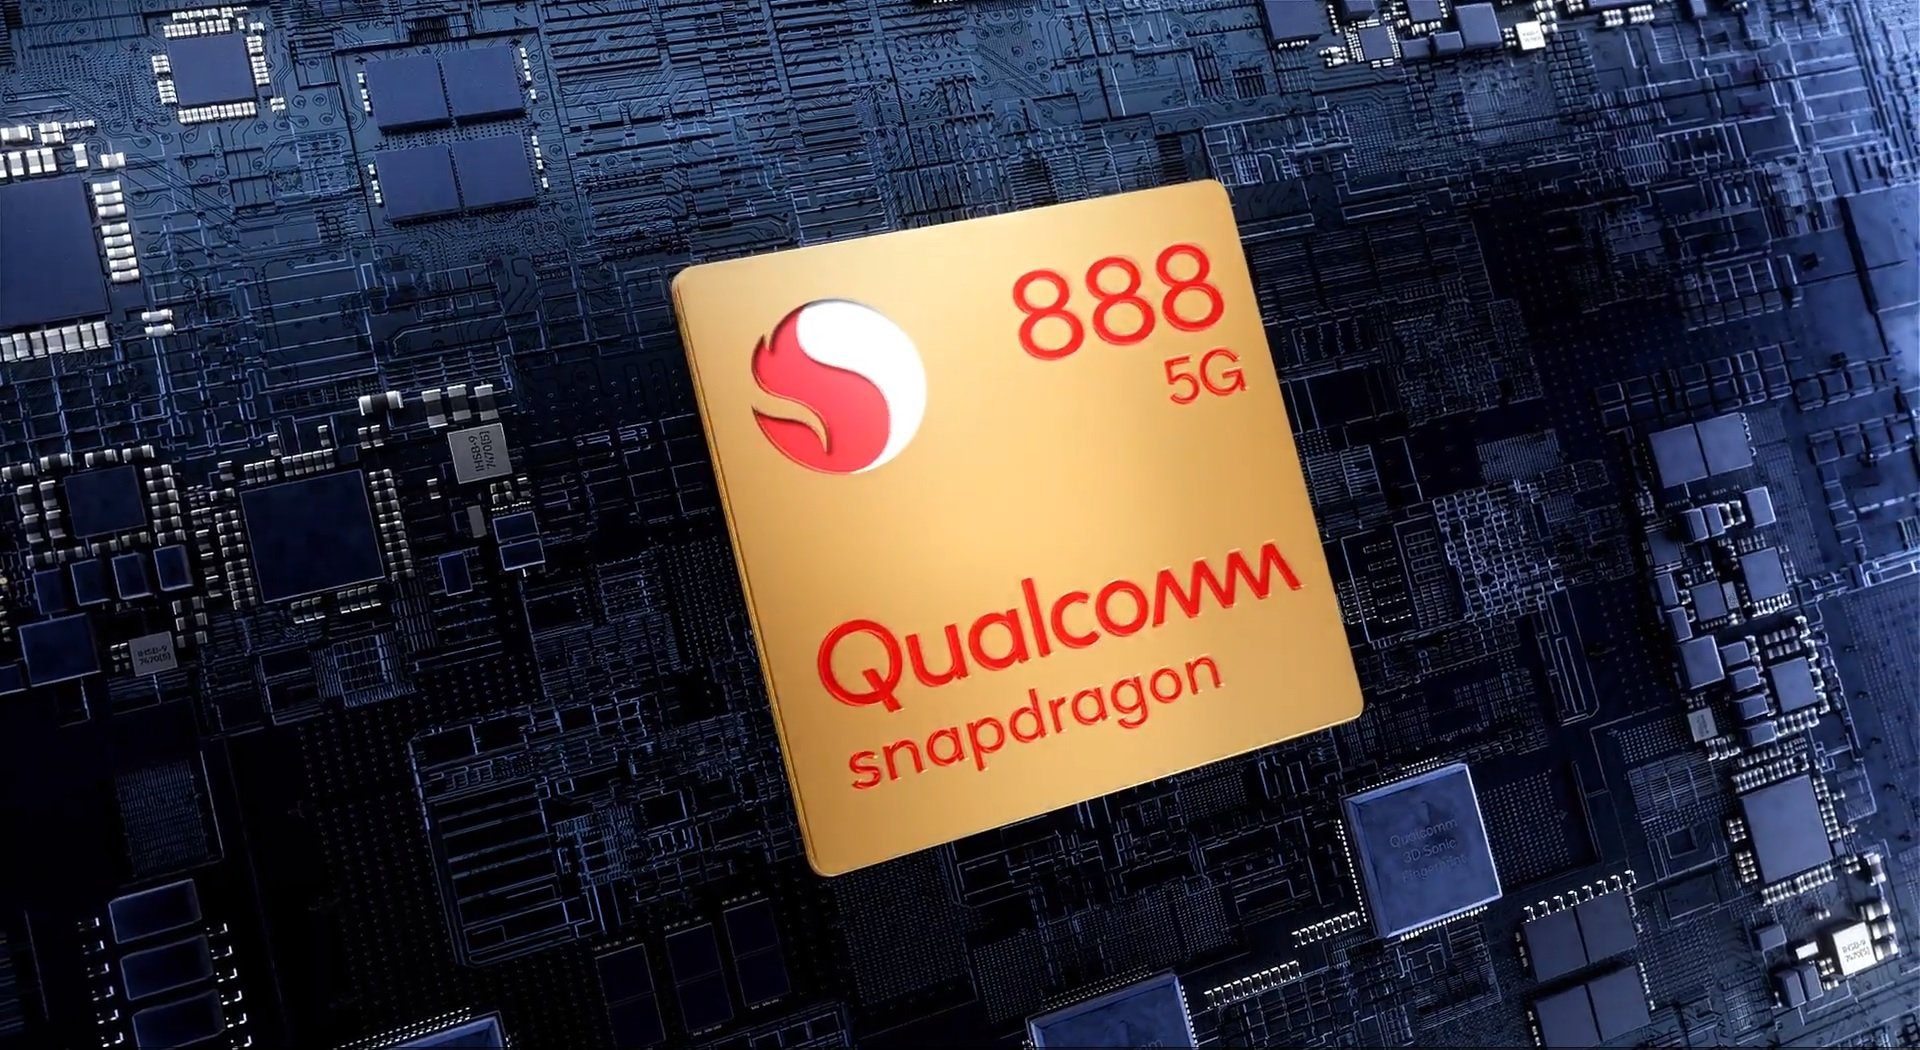 Wann das zweite Smartphone mit dem Snapdragon 888 Prozessor auf den Markt kommt, ist bereits bekannt 197